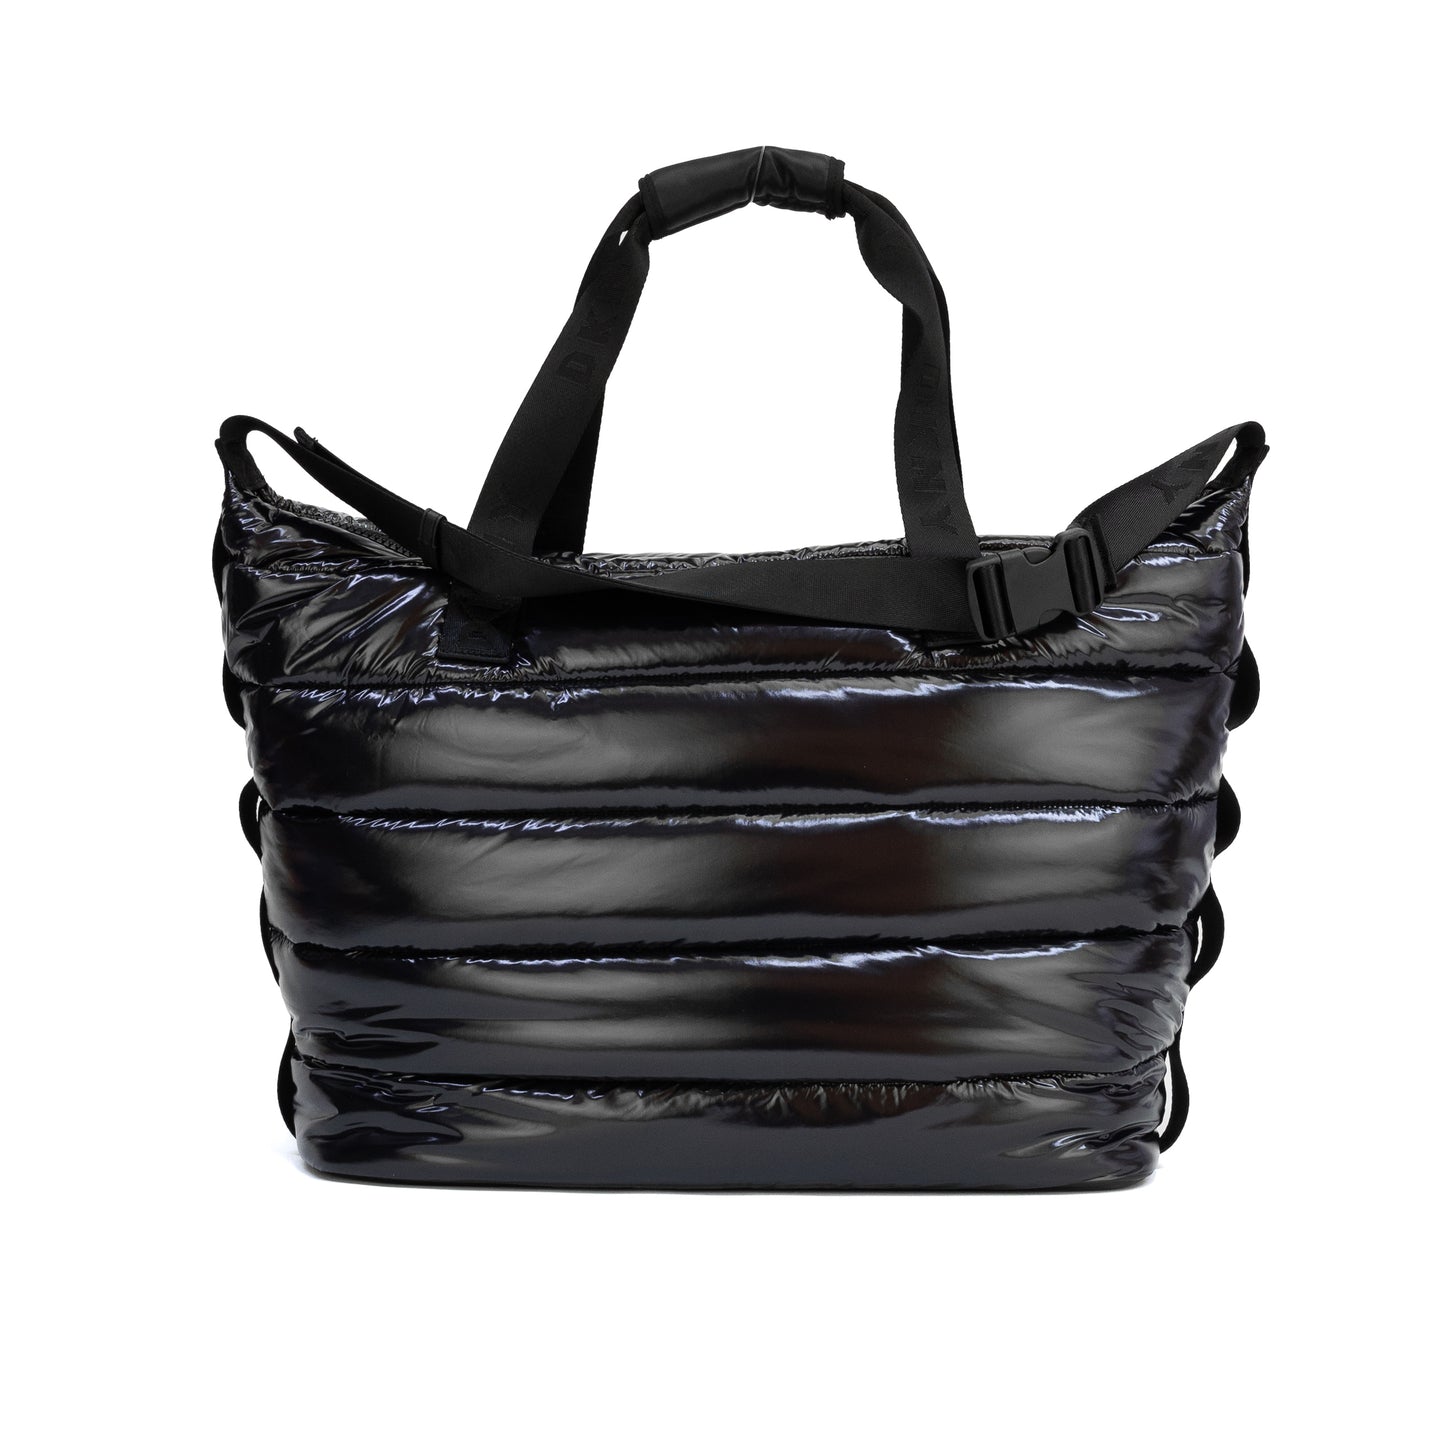 DKNY Nora Puffer Weekender Tote Bag - Black